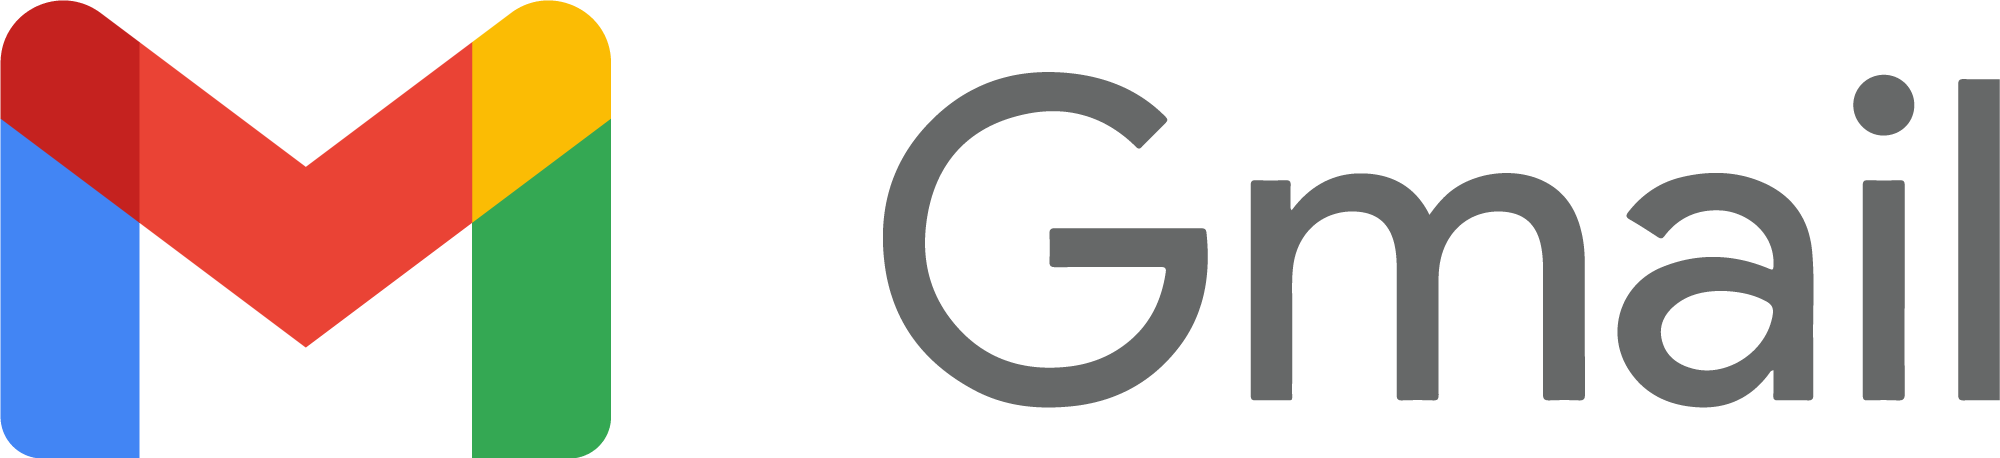 Gmail Name Logo